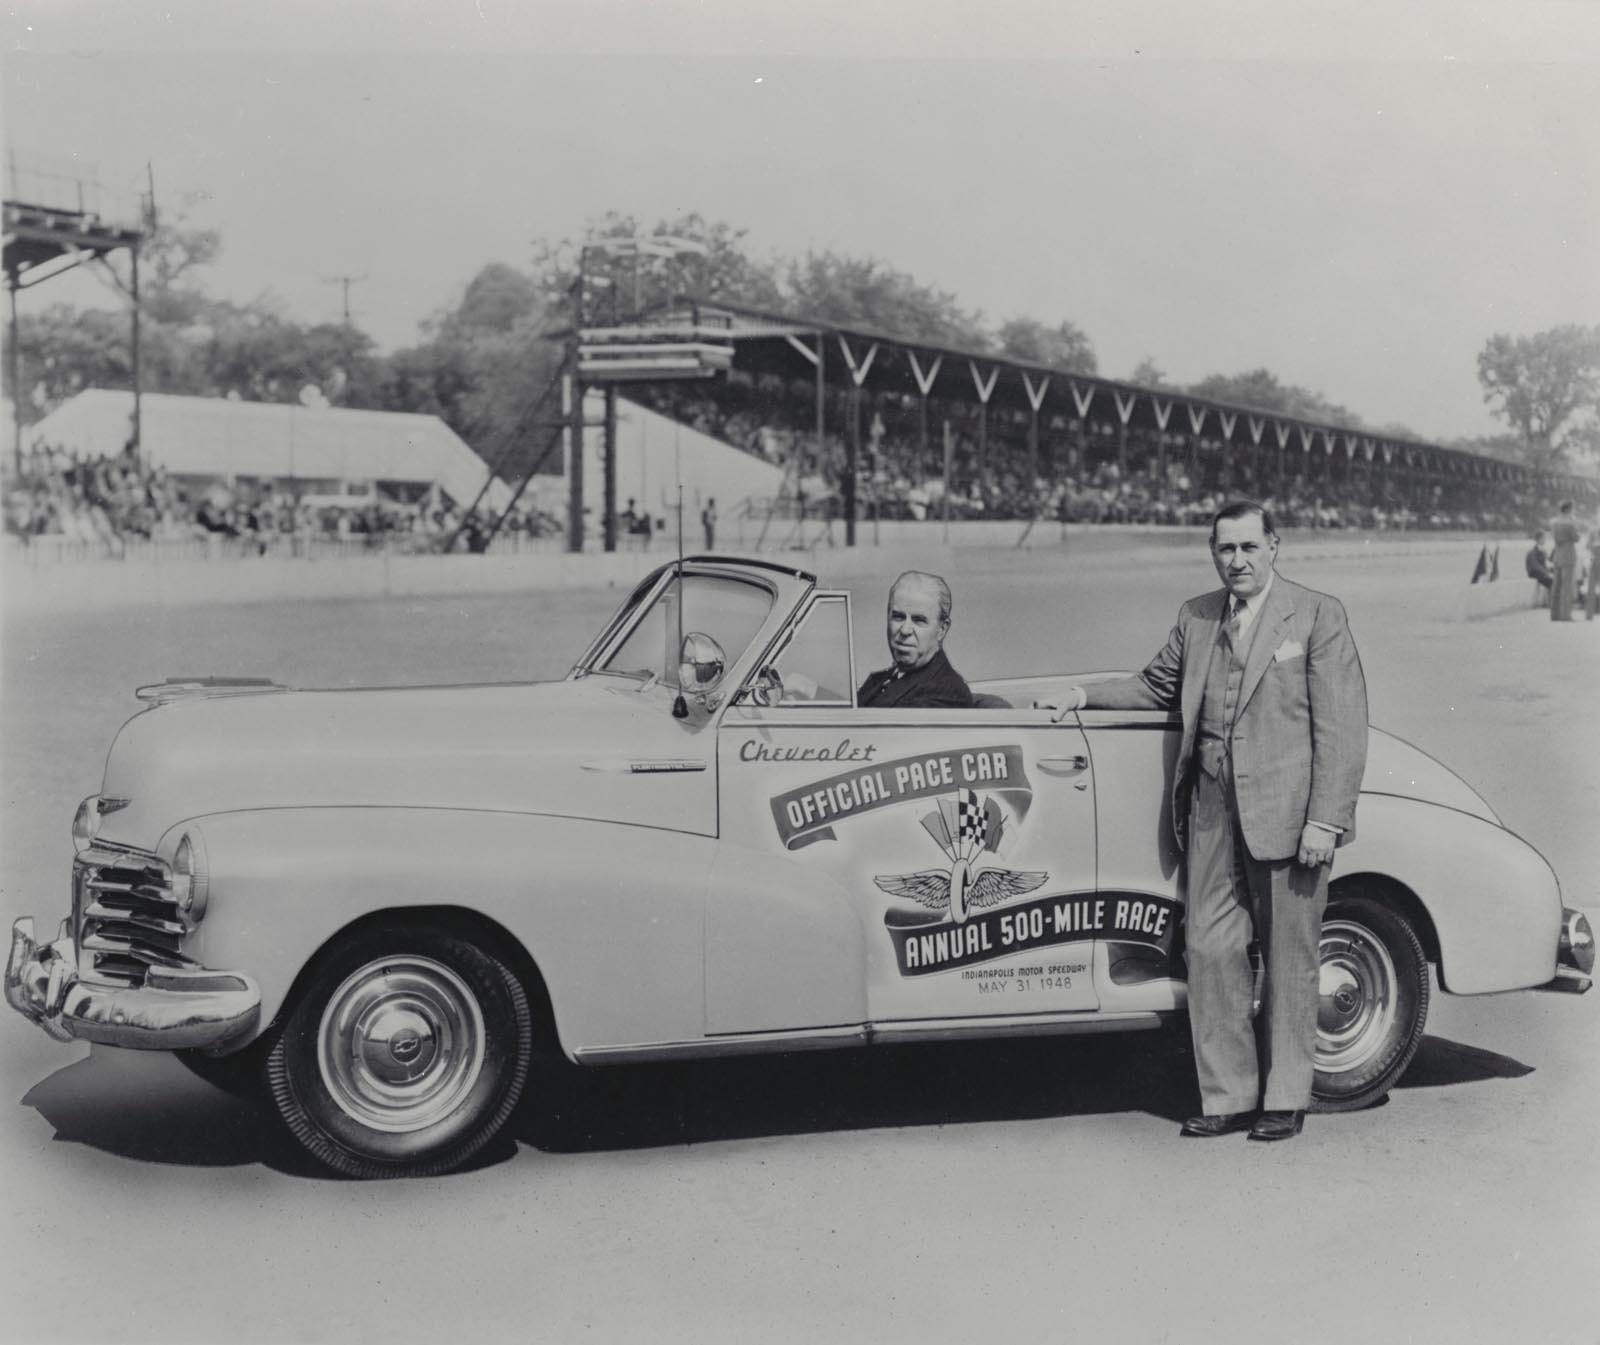 Prima masina Chevrolet pace-car la Indy 500 a fost un Fleetmaster Convertible, in 1948